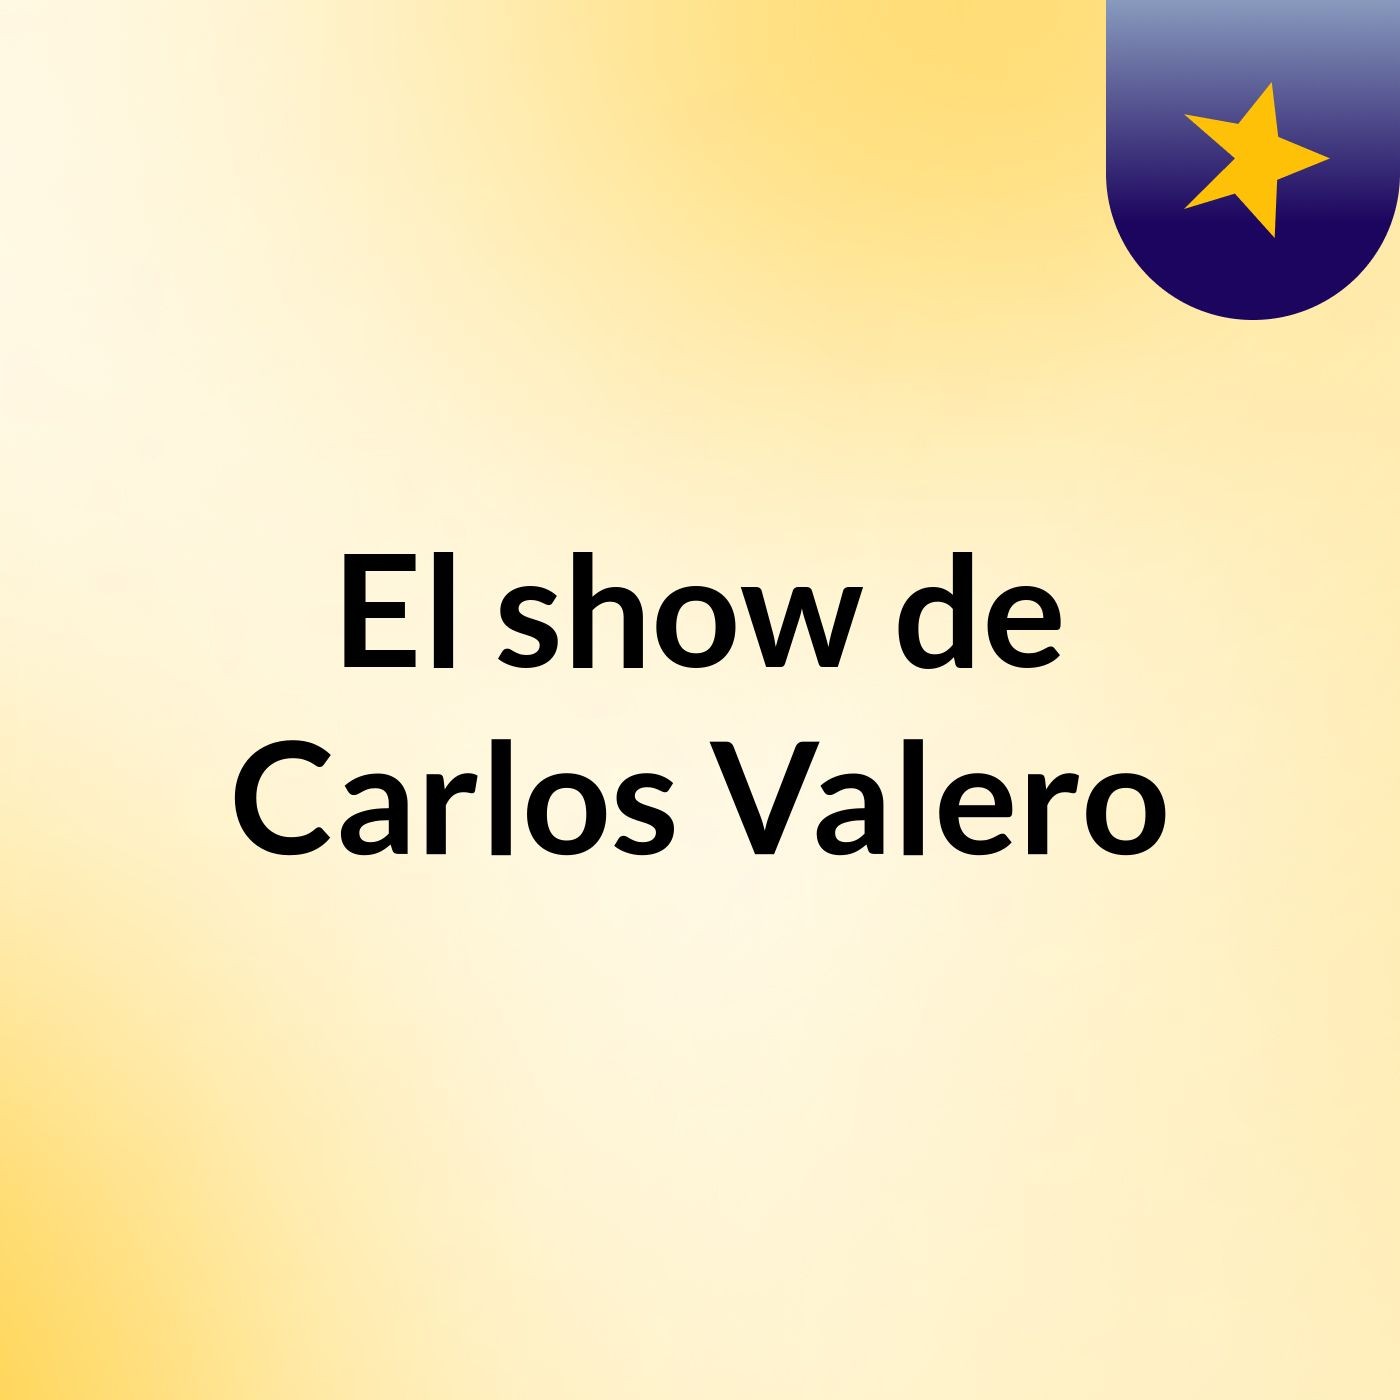 El show de Carlos Valero